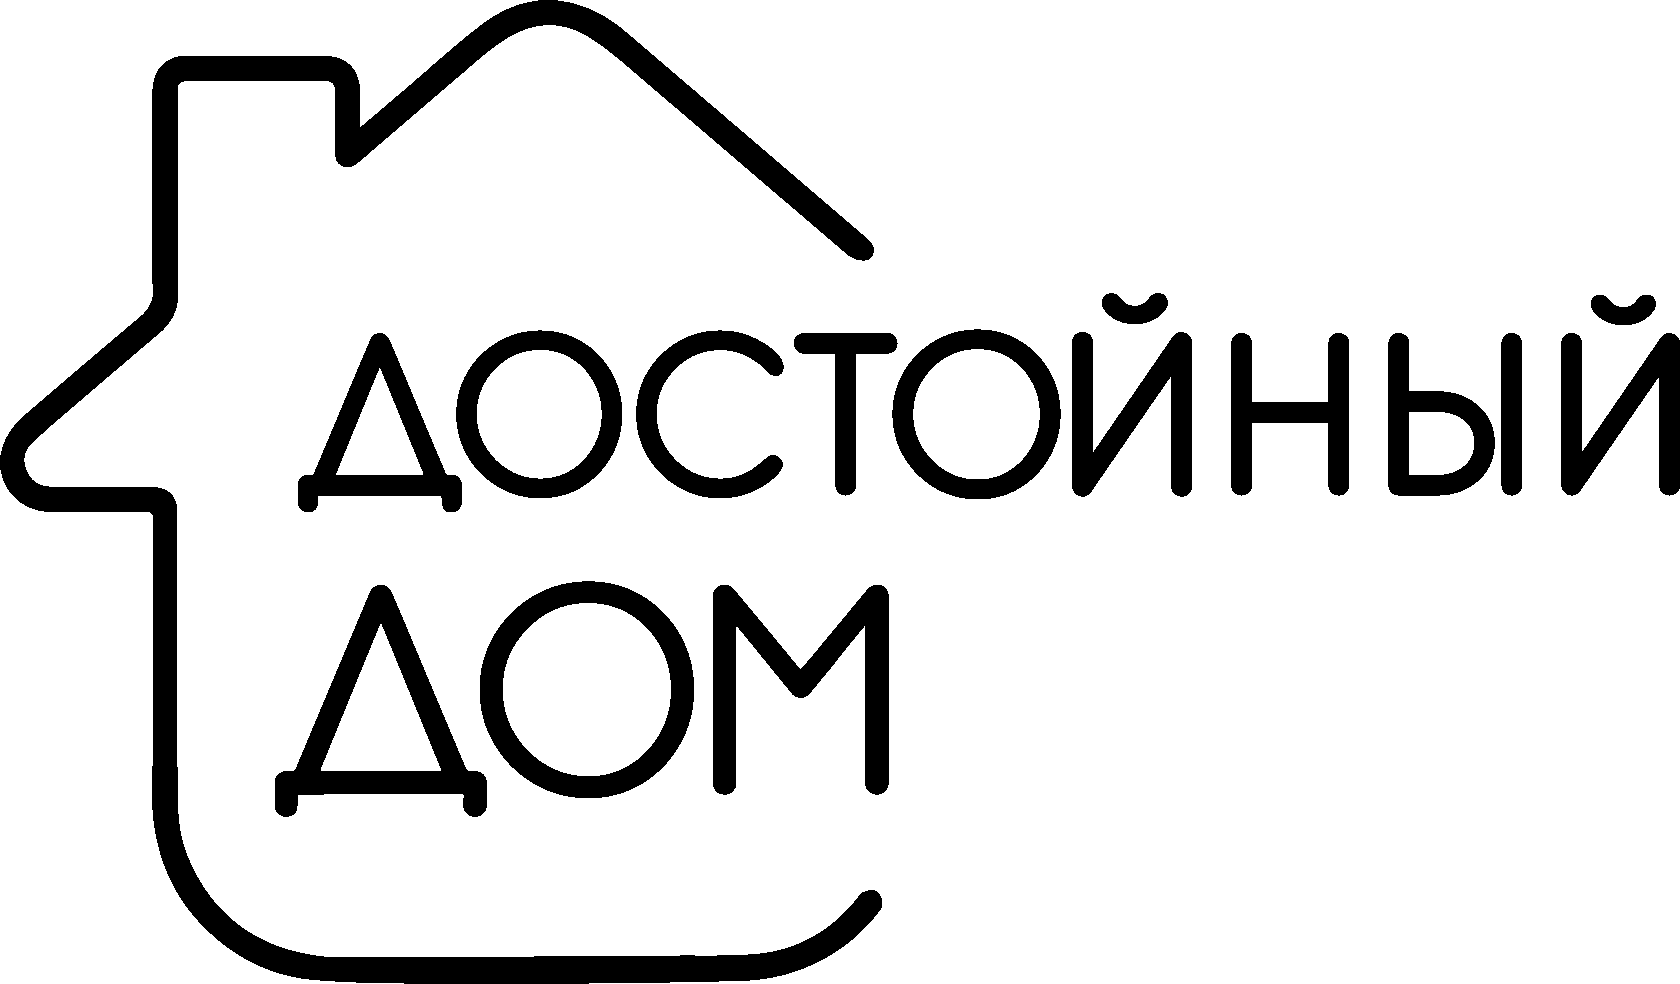 Доступный дом логотип черный